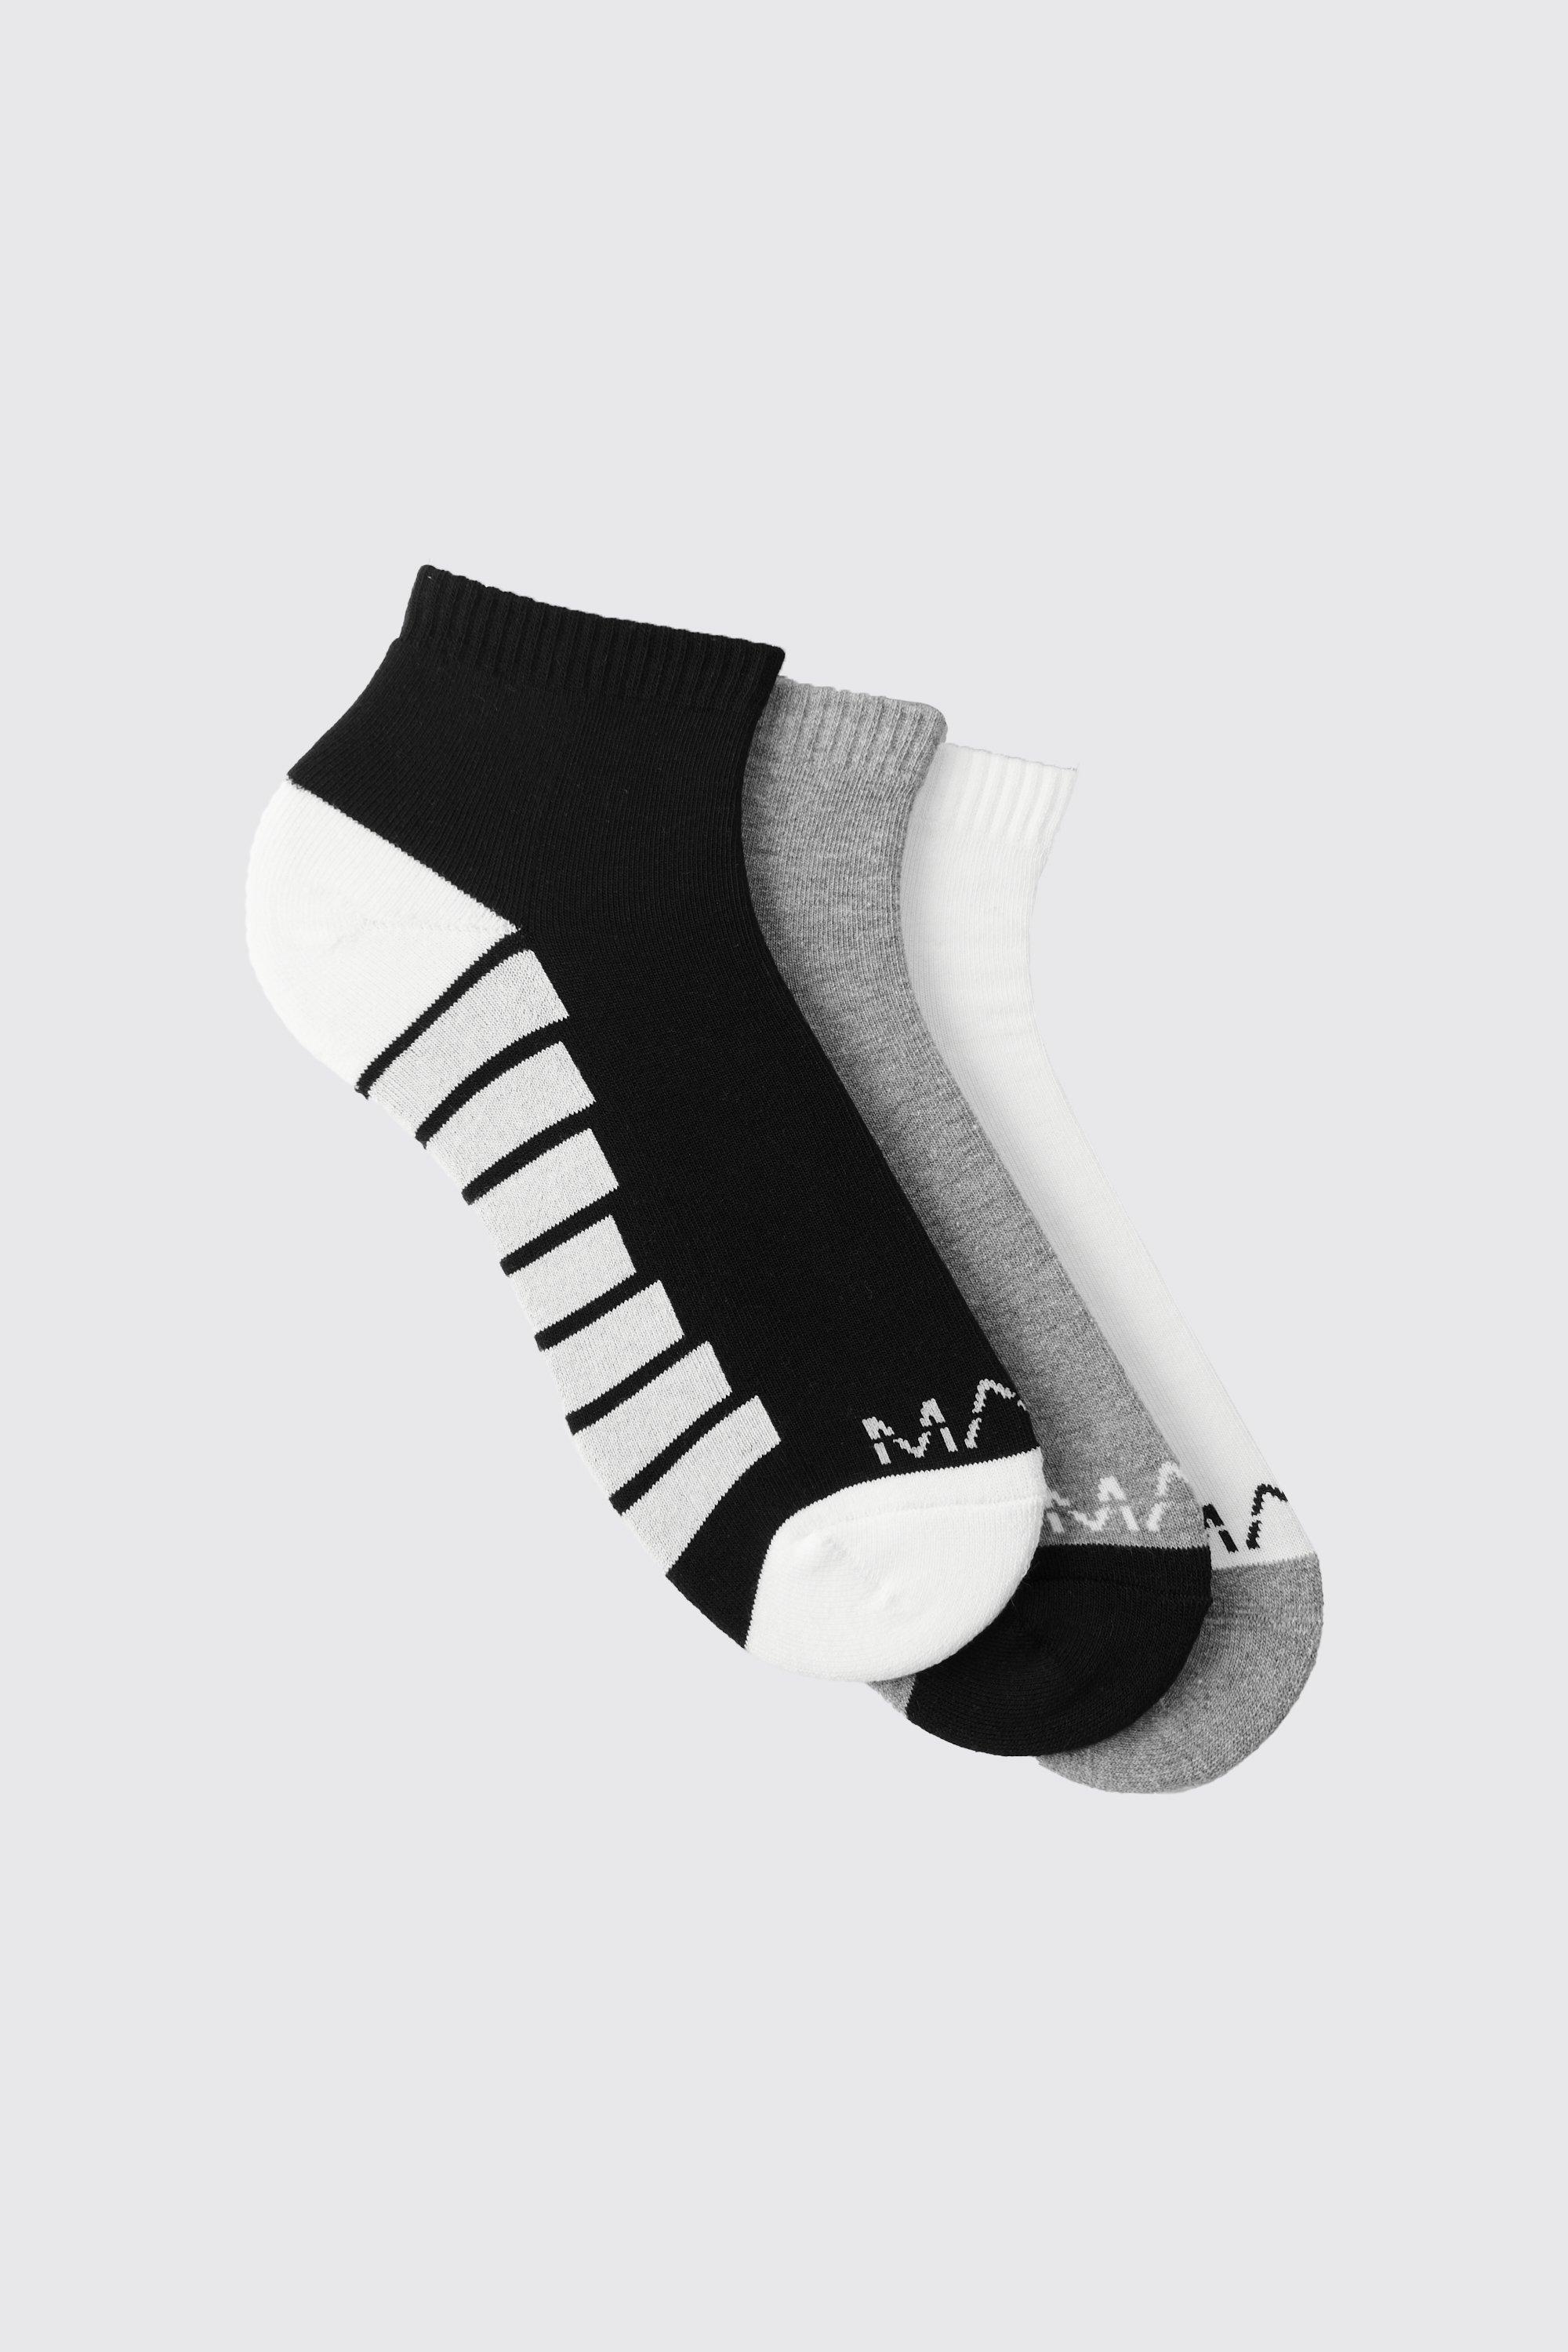 Image of Calzini alla caviglia Man Dash Activewear - set di 3 paia, Multi